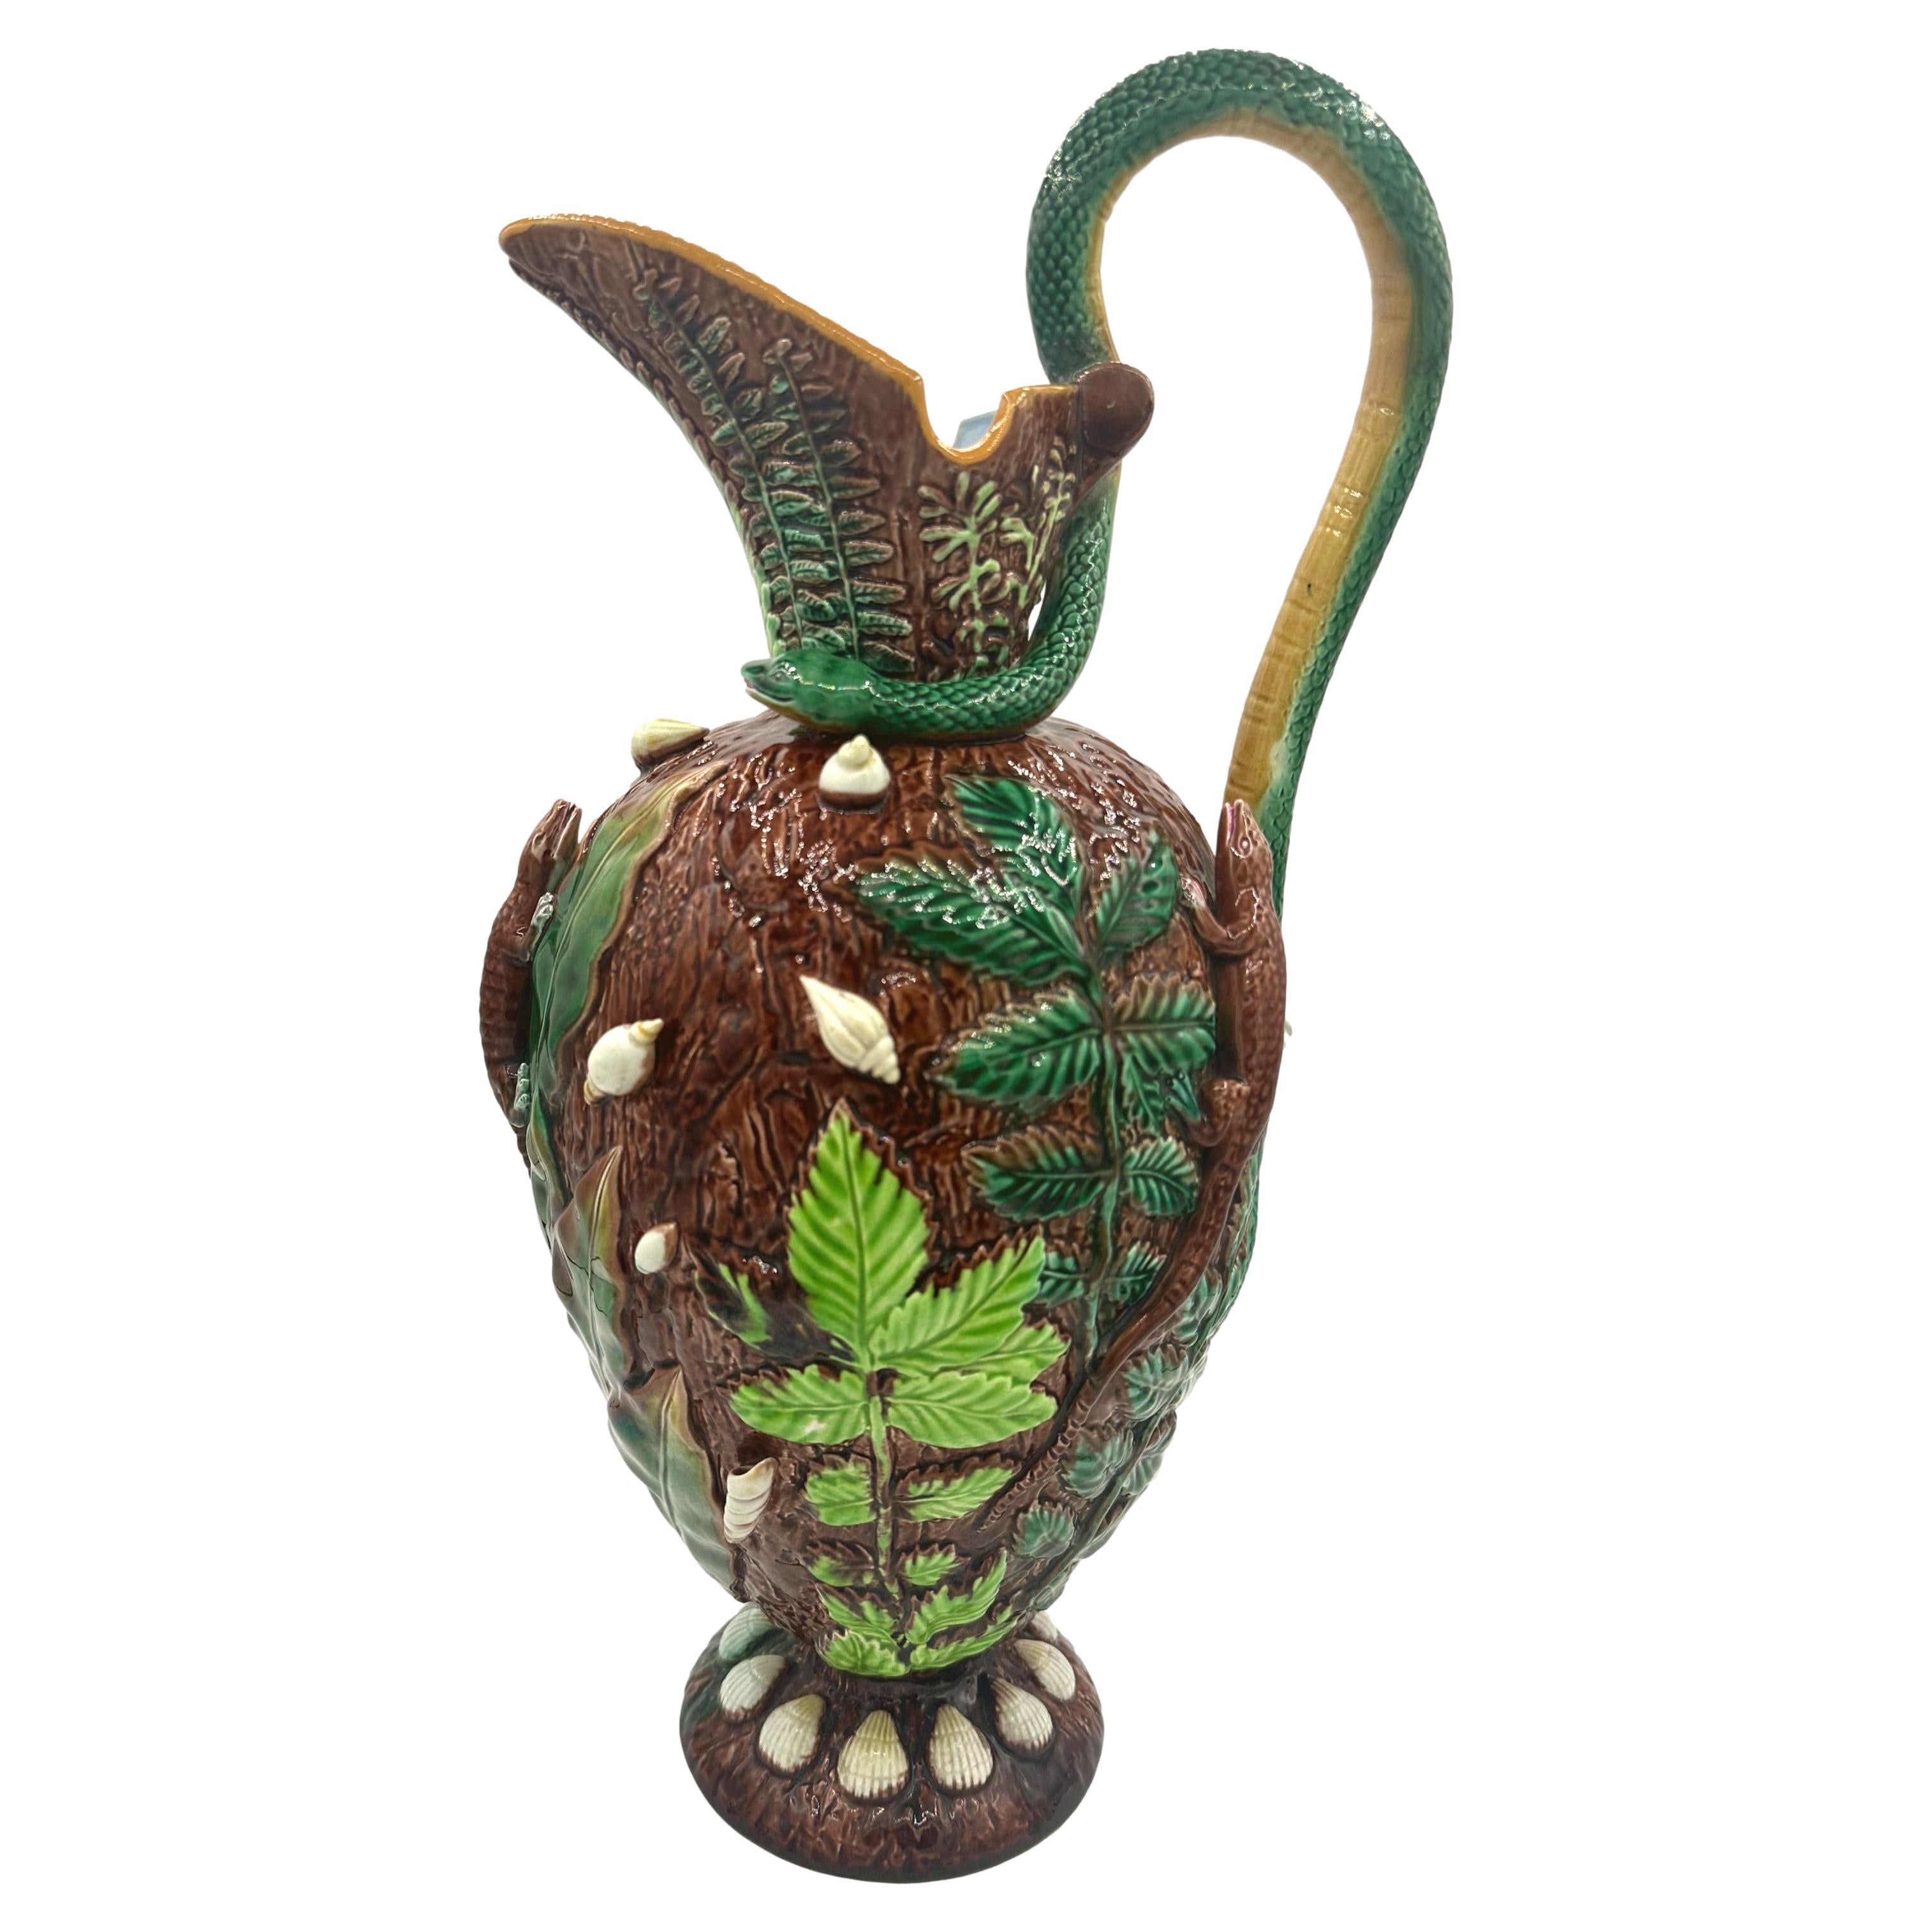 George Jones Majolika-Vase „Palissy“ mit Schlangengriff, englisch, um 1870